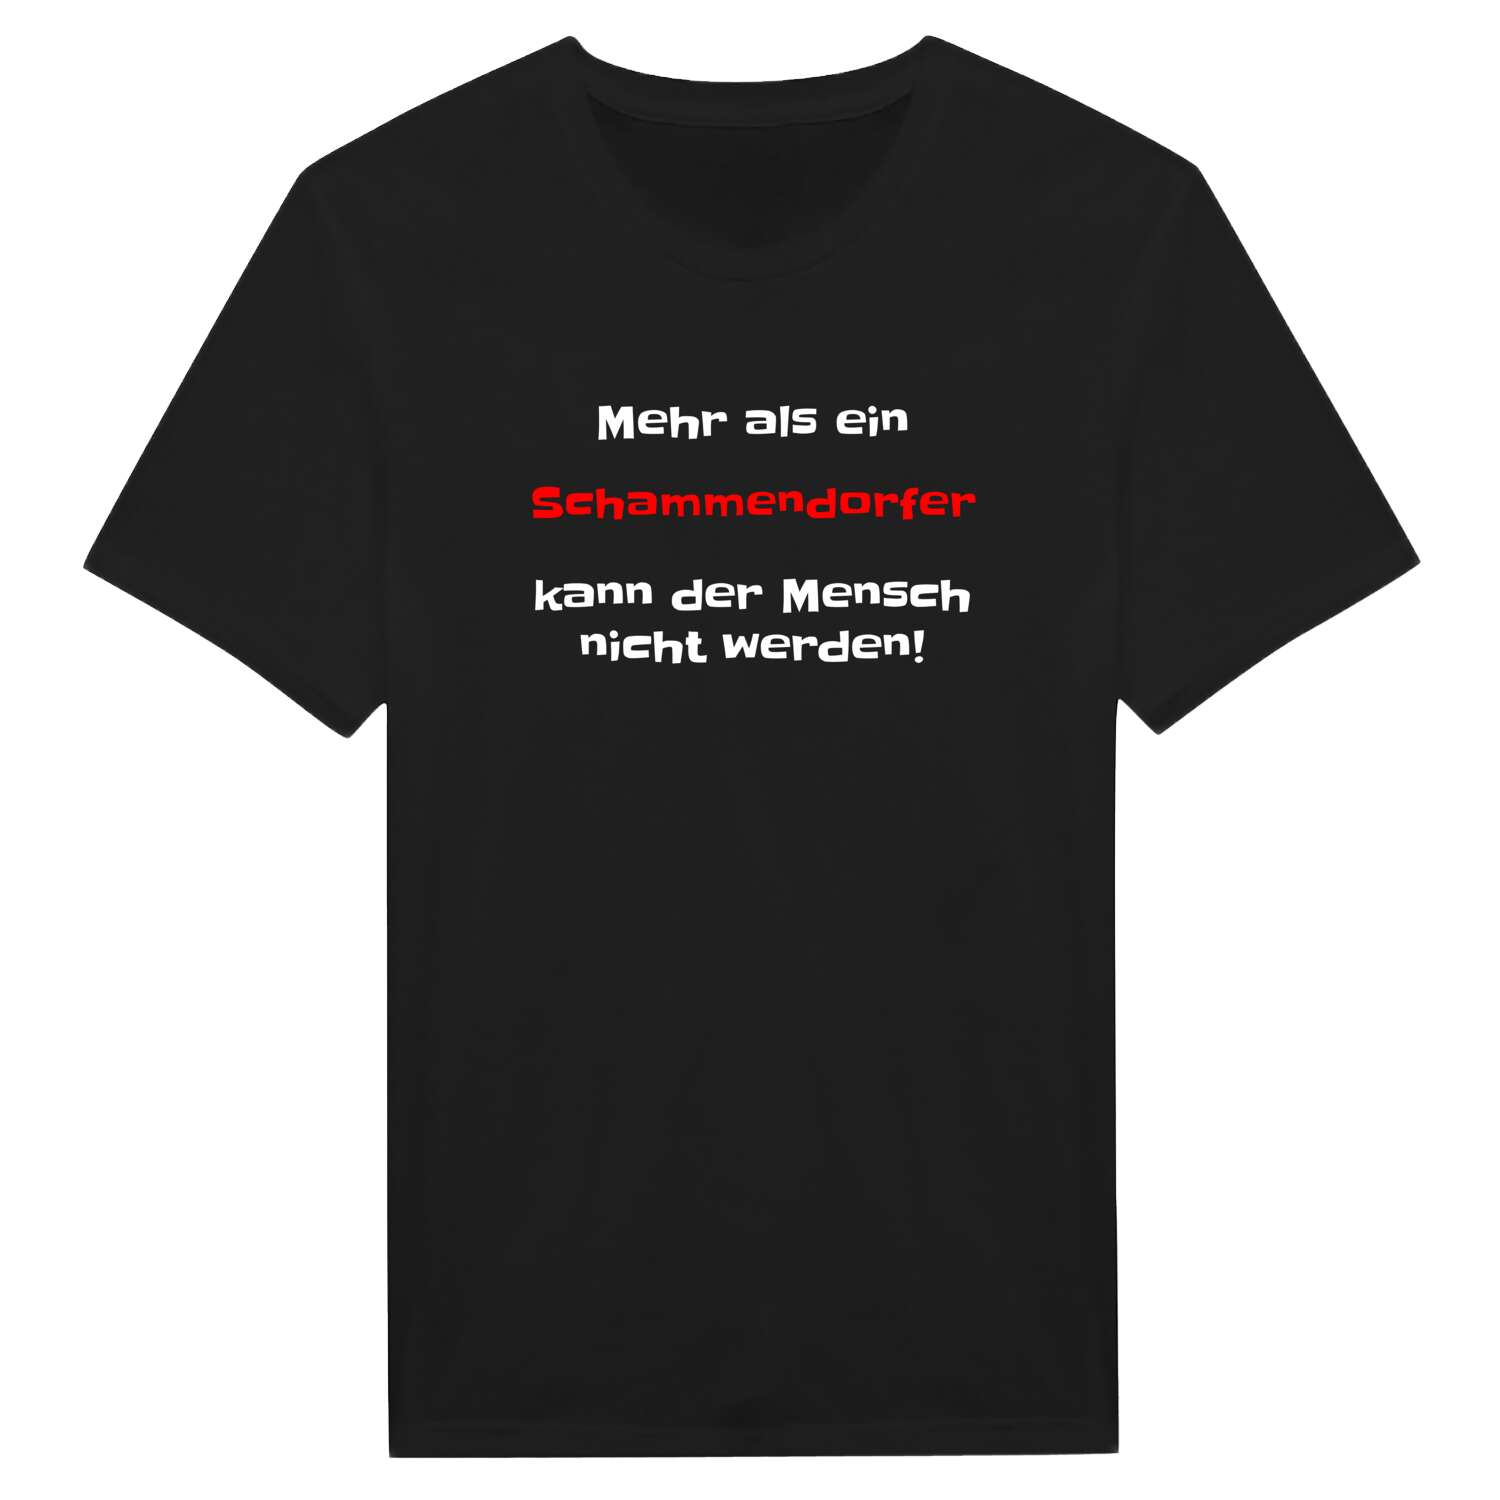 Schammendorf T-Shirt »Mehr als ein«